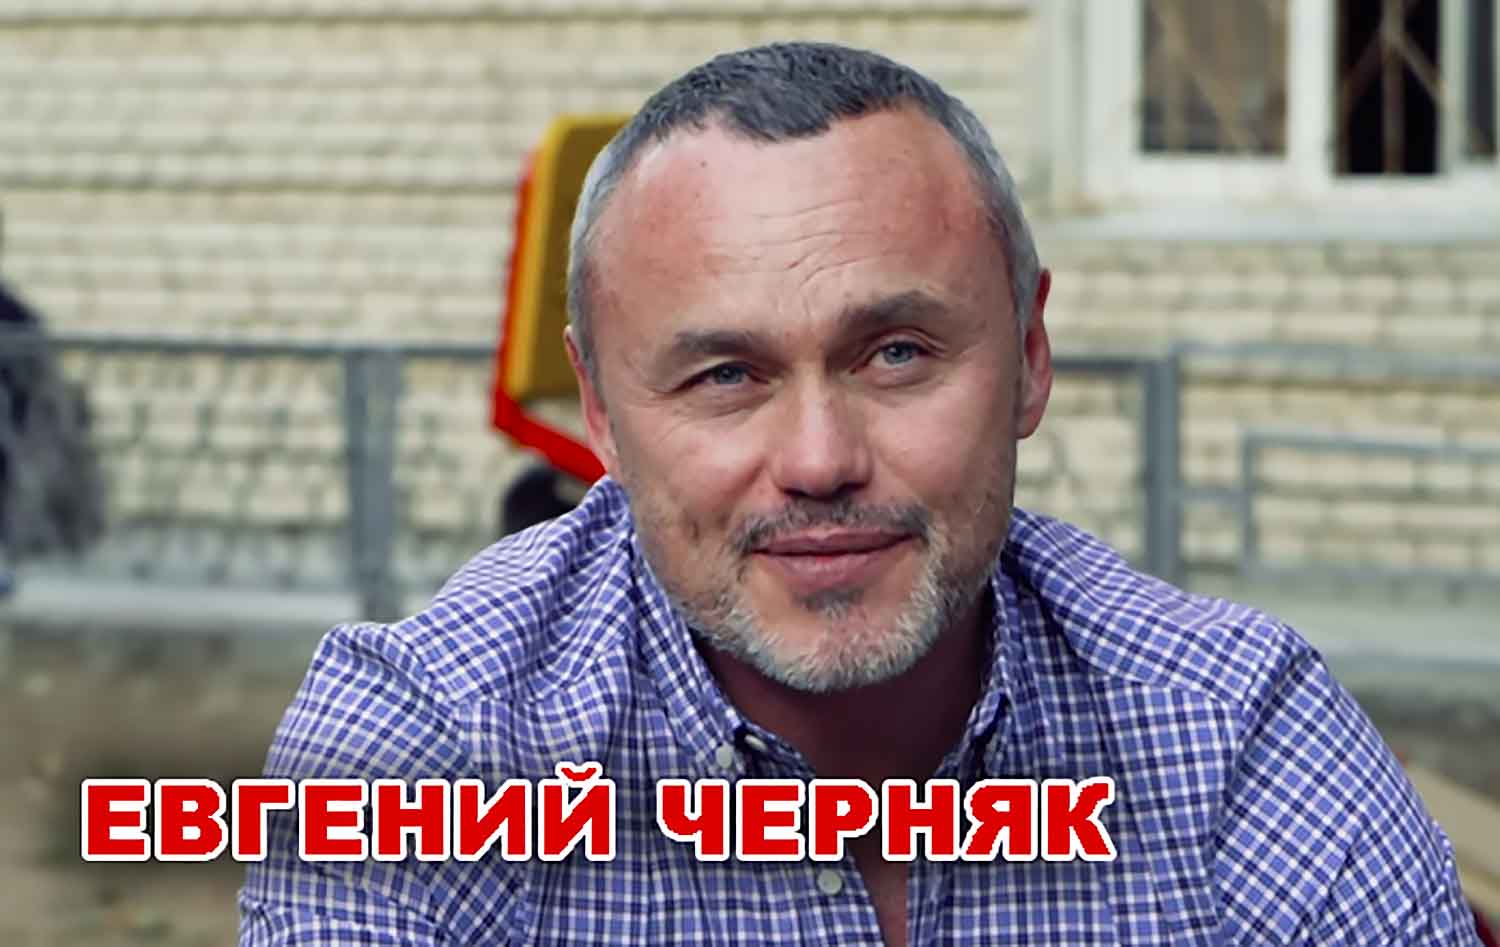 Евгений Черняк - миллиардер и ютубер